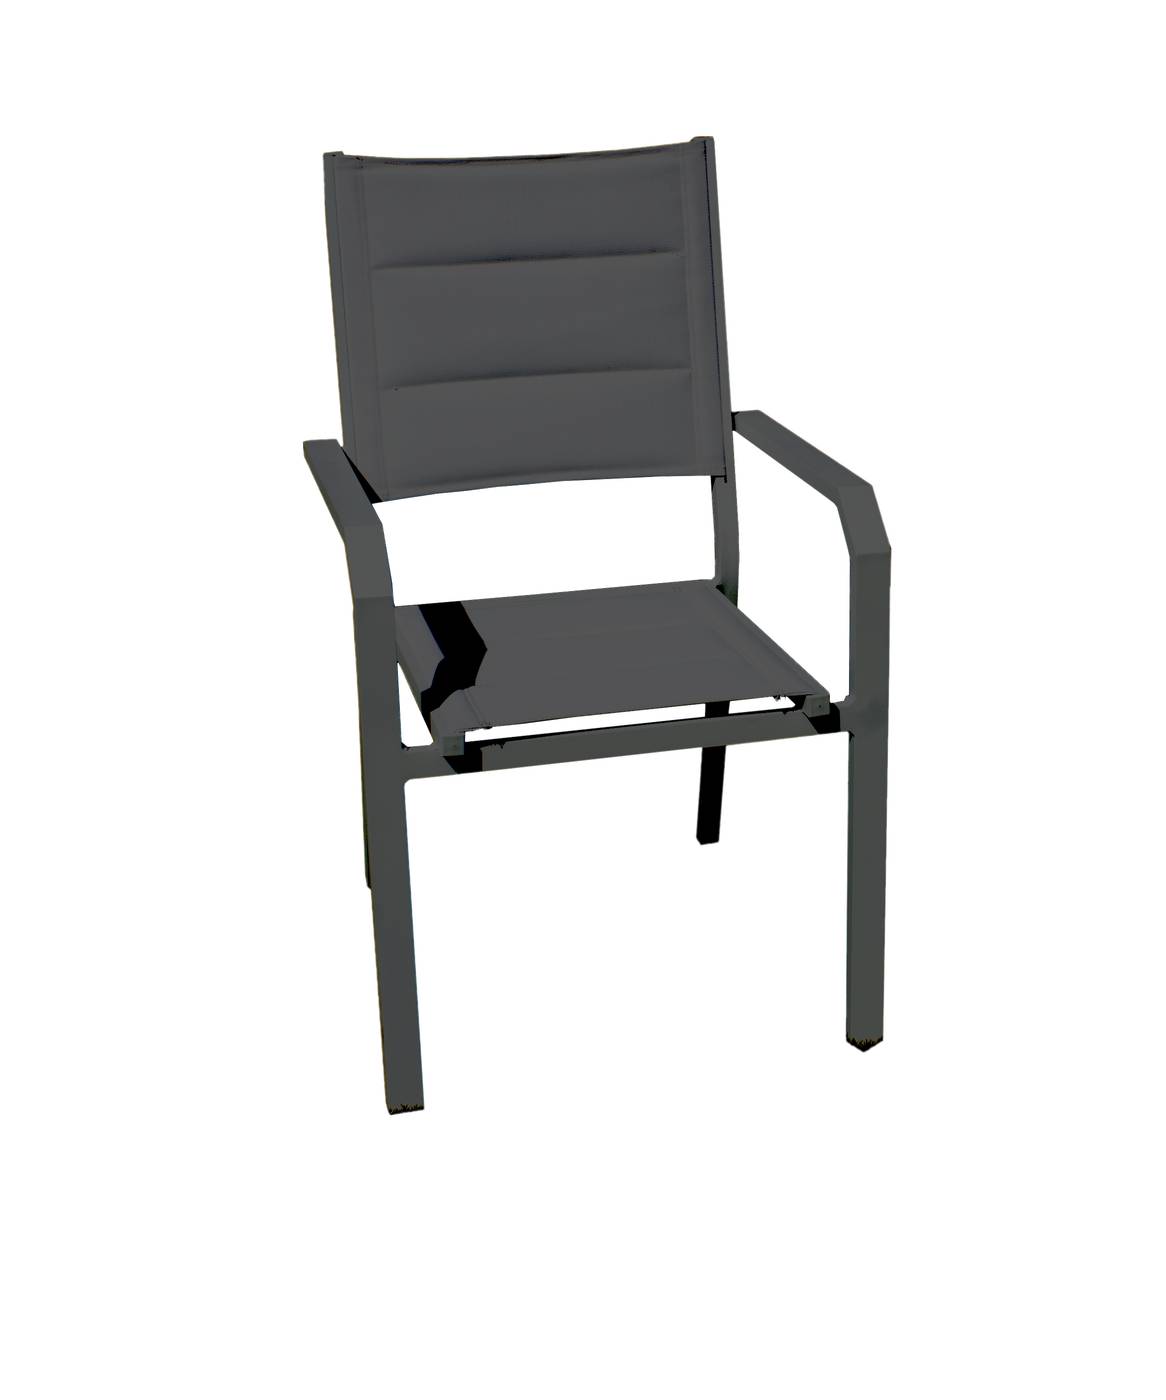 Sillón Aluminio Priscila - Sillón apilable de aluminio, con asiento y respaldo de textilen acolchado. Colores: blanco, antracita, champagne, plata o marrón.